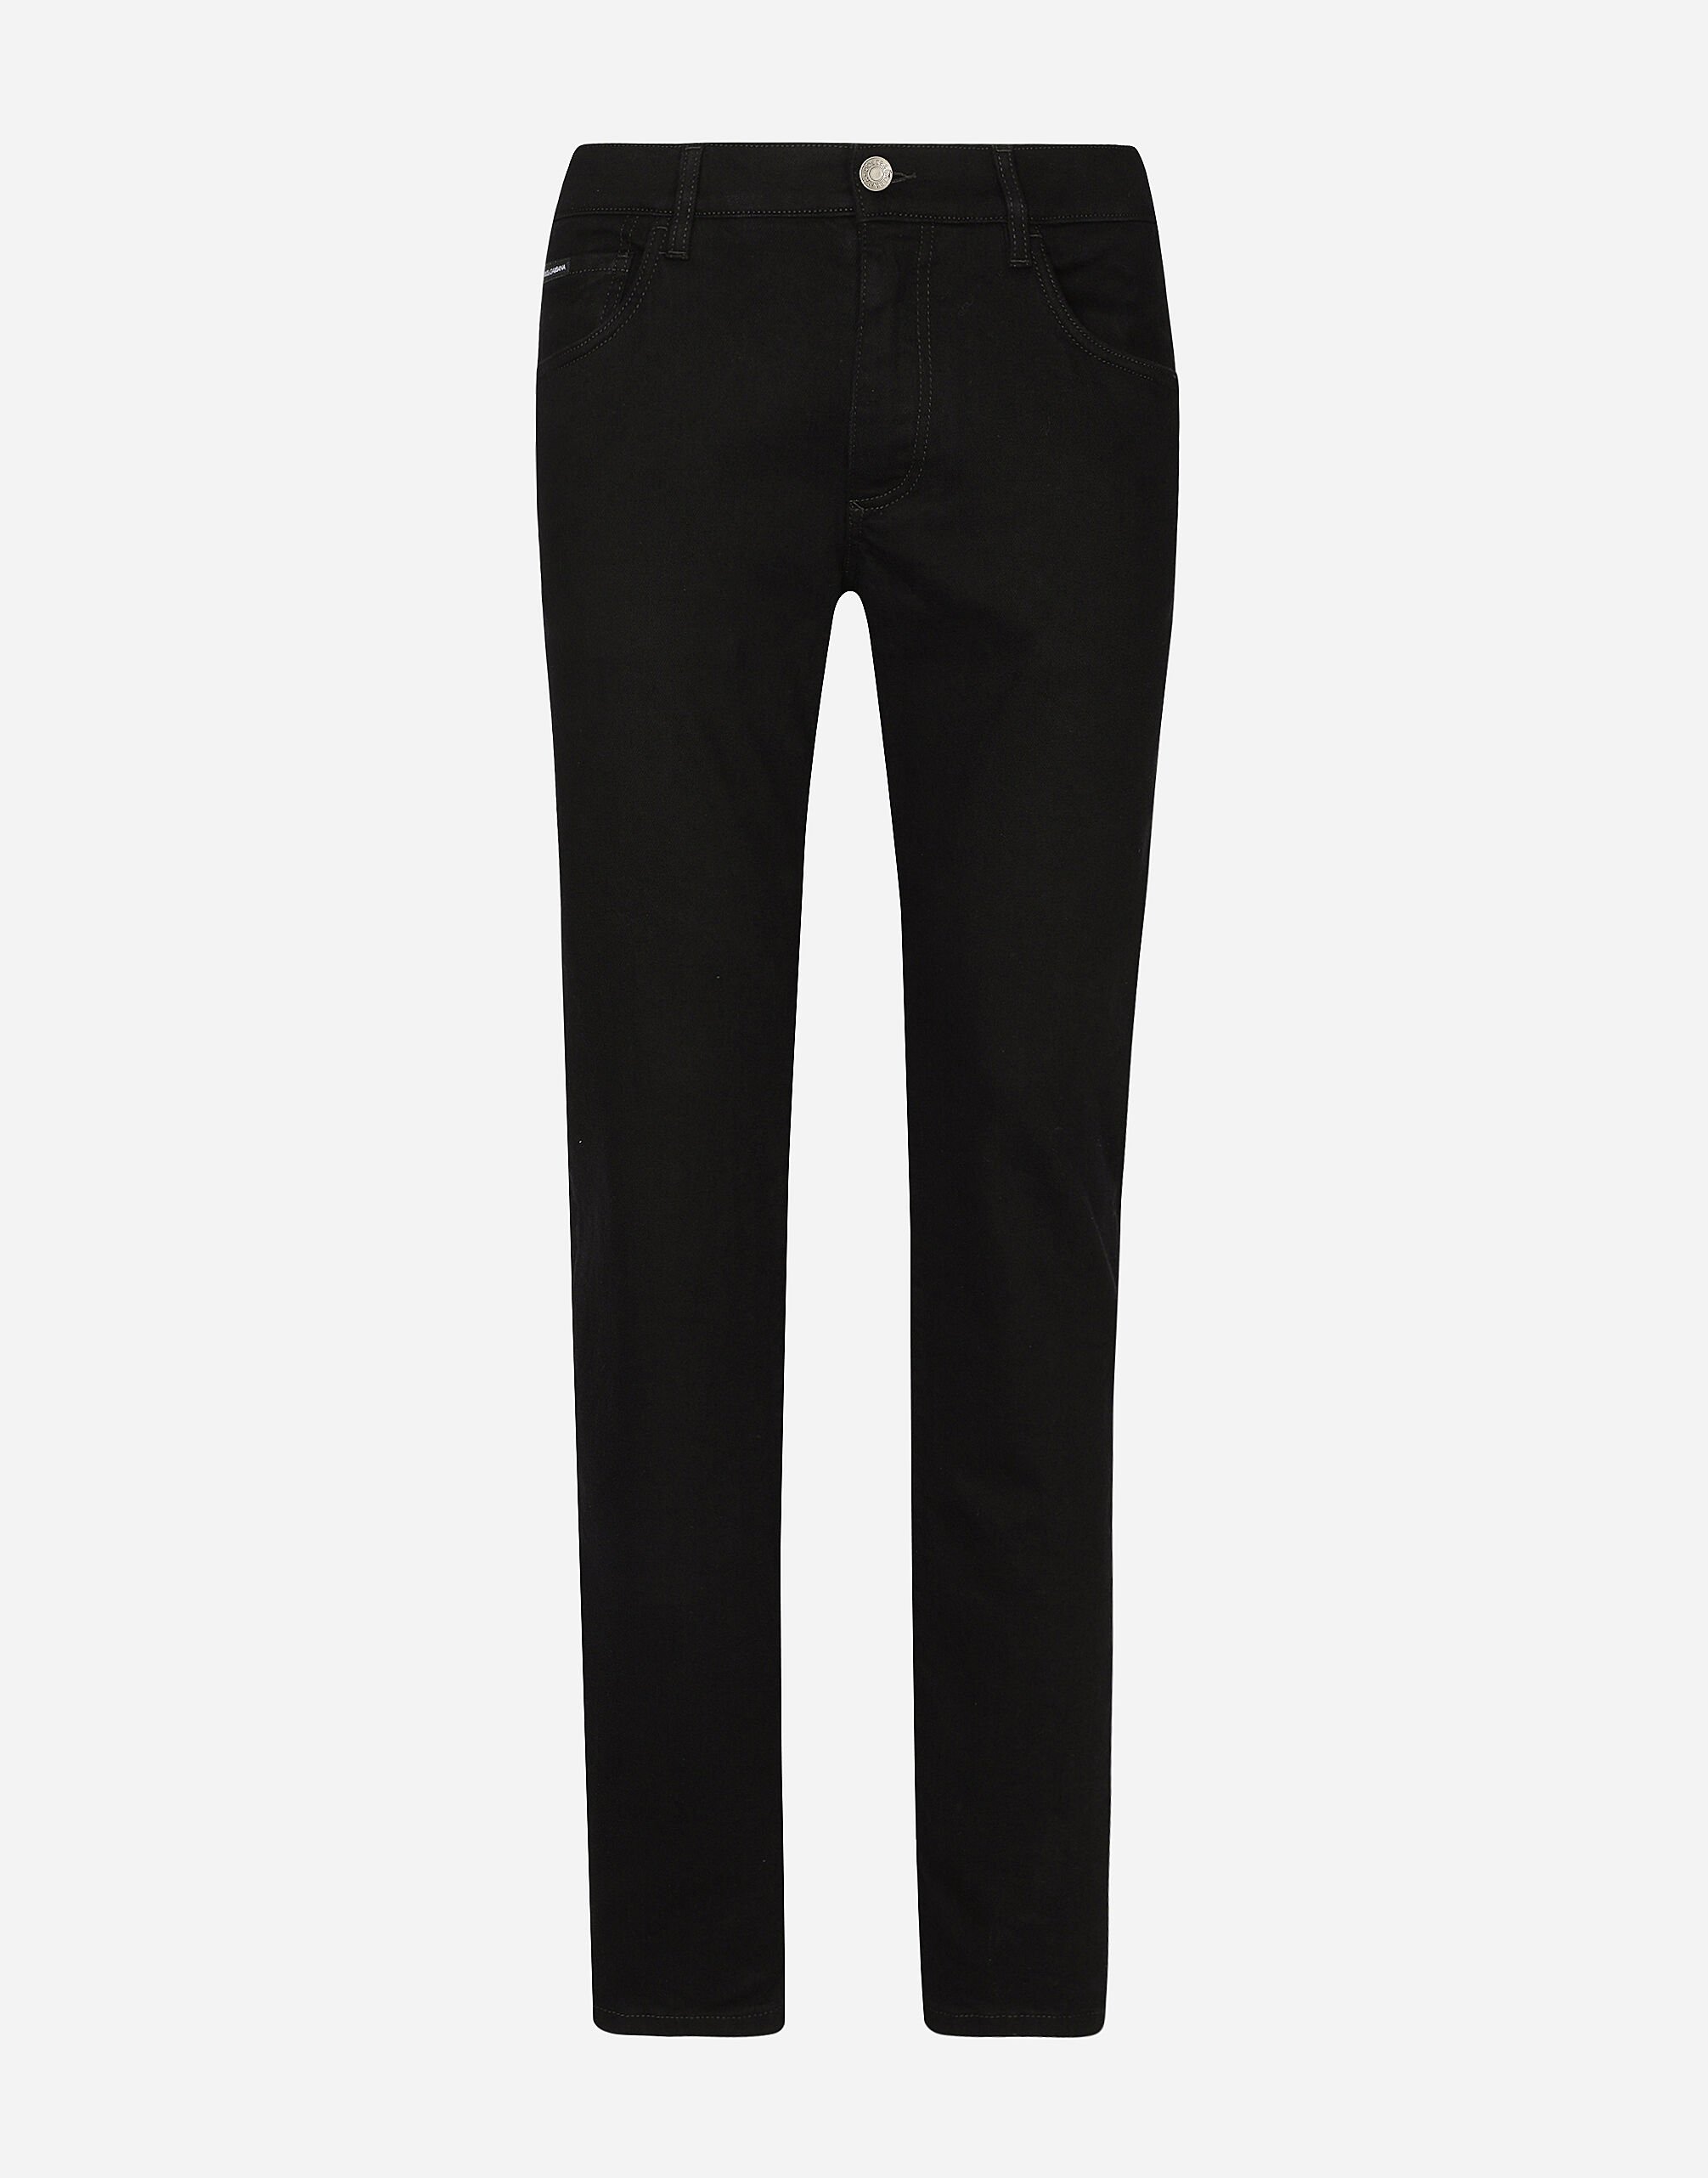 Dolce & Gabbana جينز أسود مرن مغسول بقصة ضيقة متعدد الألوان G9NL5DG8GW9